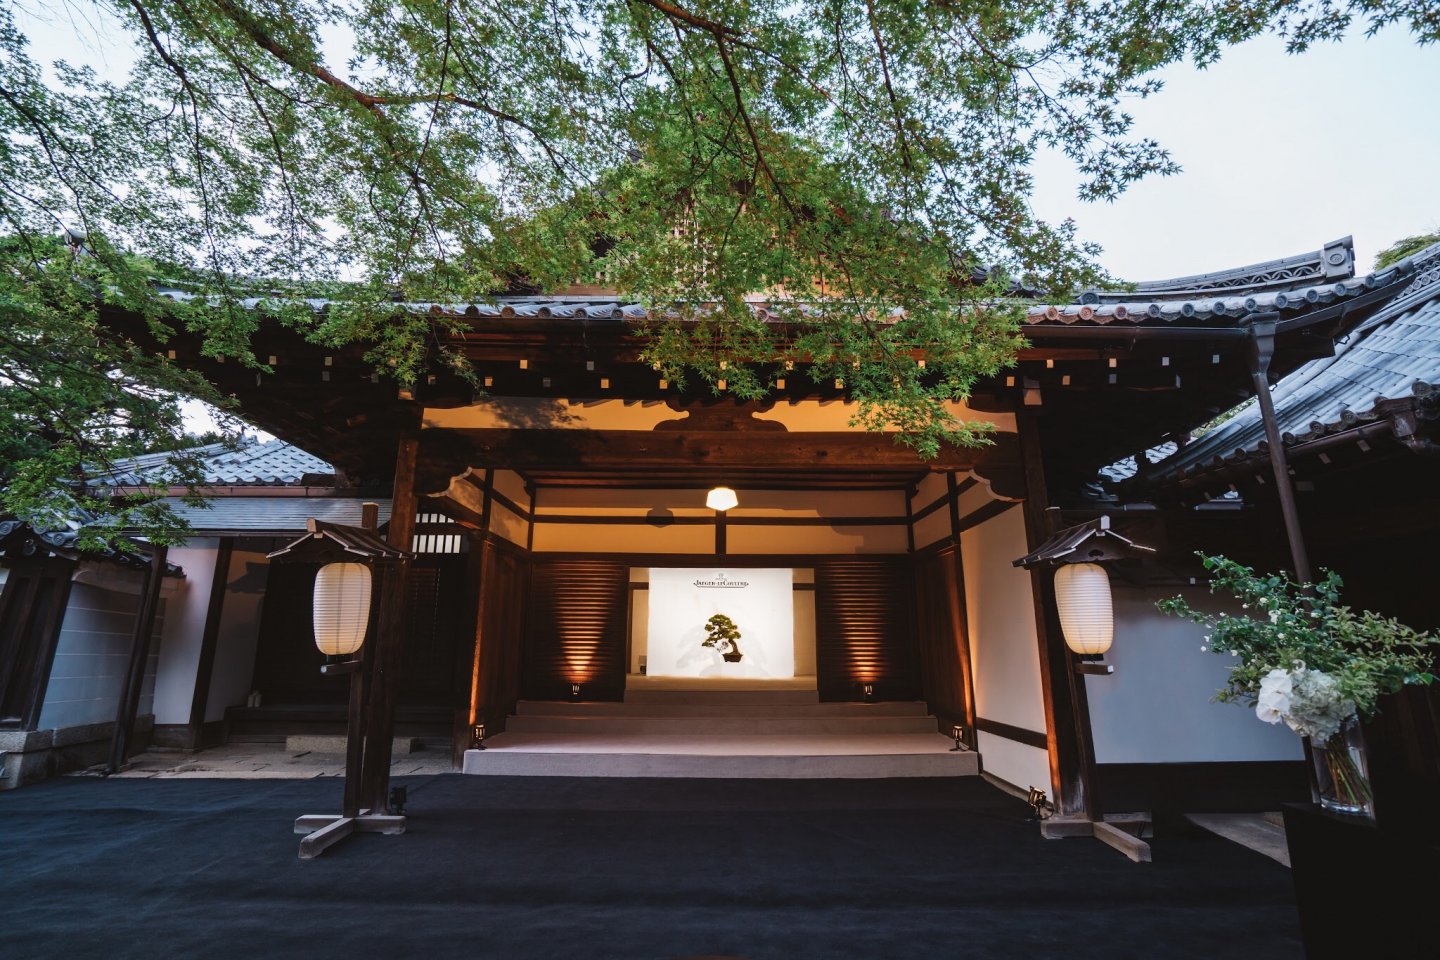 ジャガールクルト、“アート・オブ・プレシジョン ～精度という名の芸術～” を探求するイベントが京都で開催